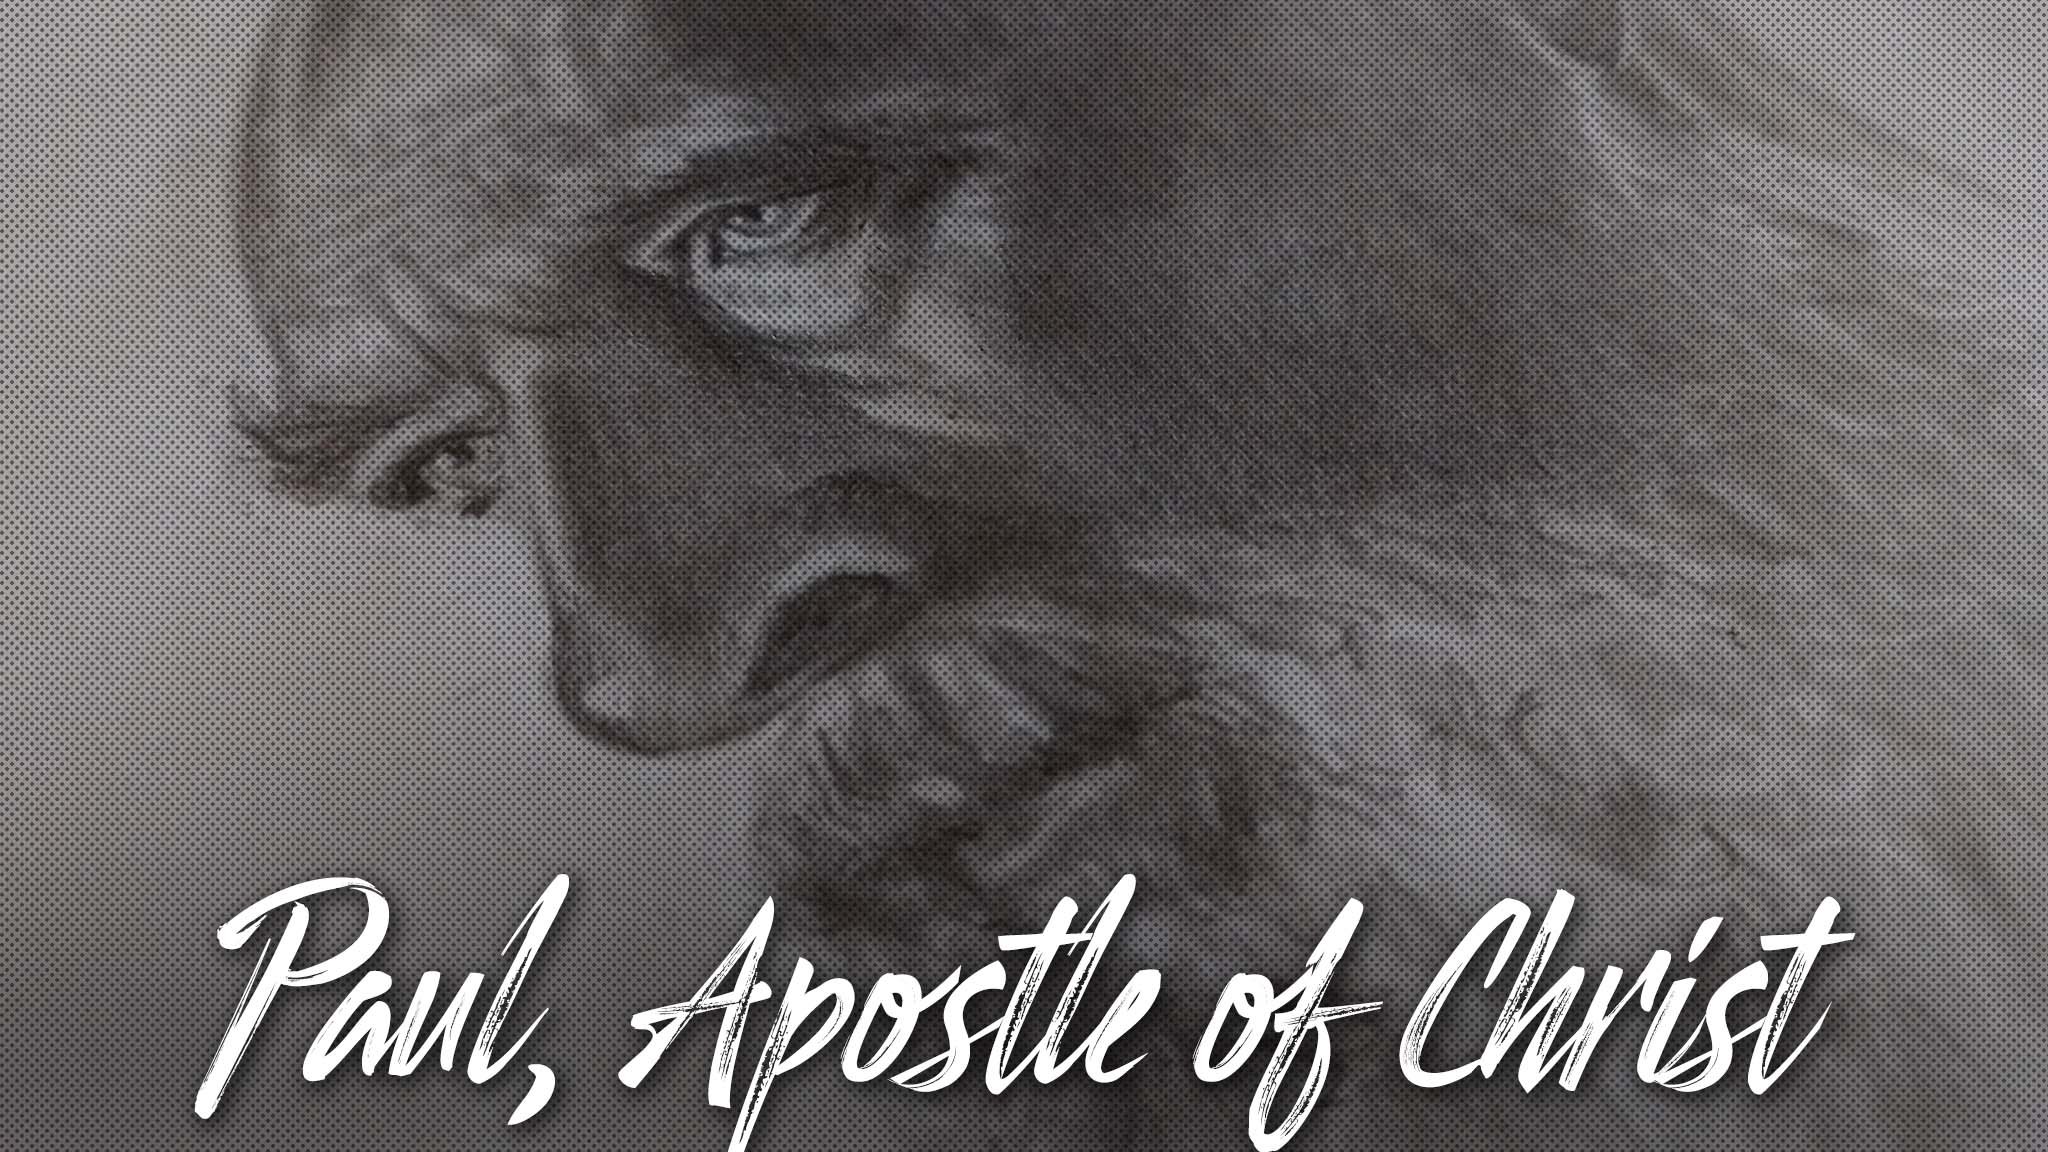 РИСУЮ по мотивам фильма Павел, апостол Христа | Paul, Apostle of Christ | ПОРТРЕТ карандашом